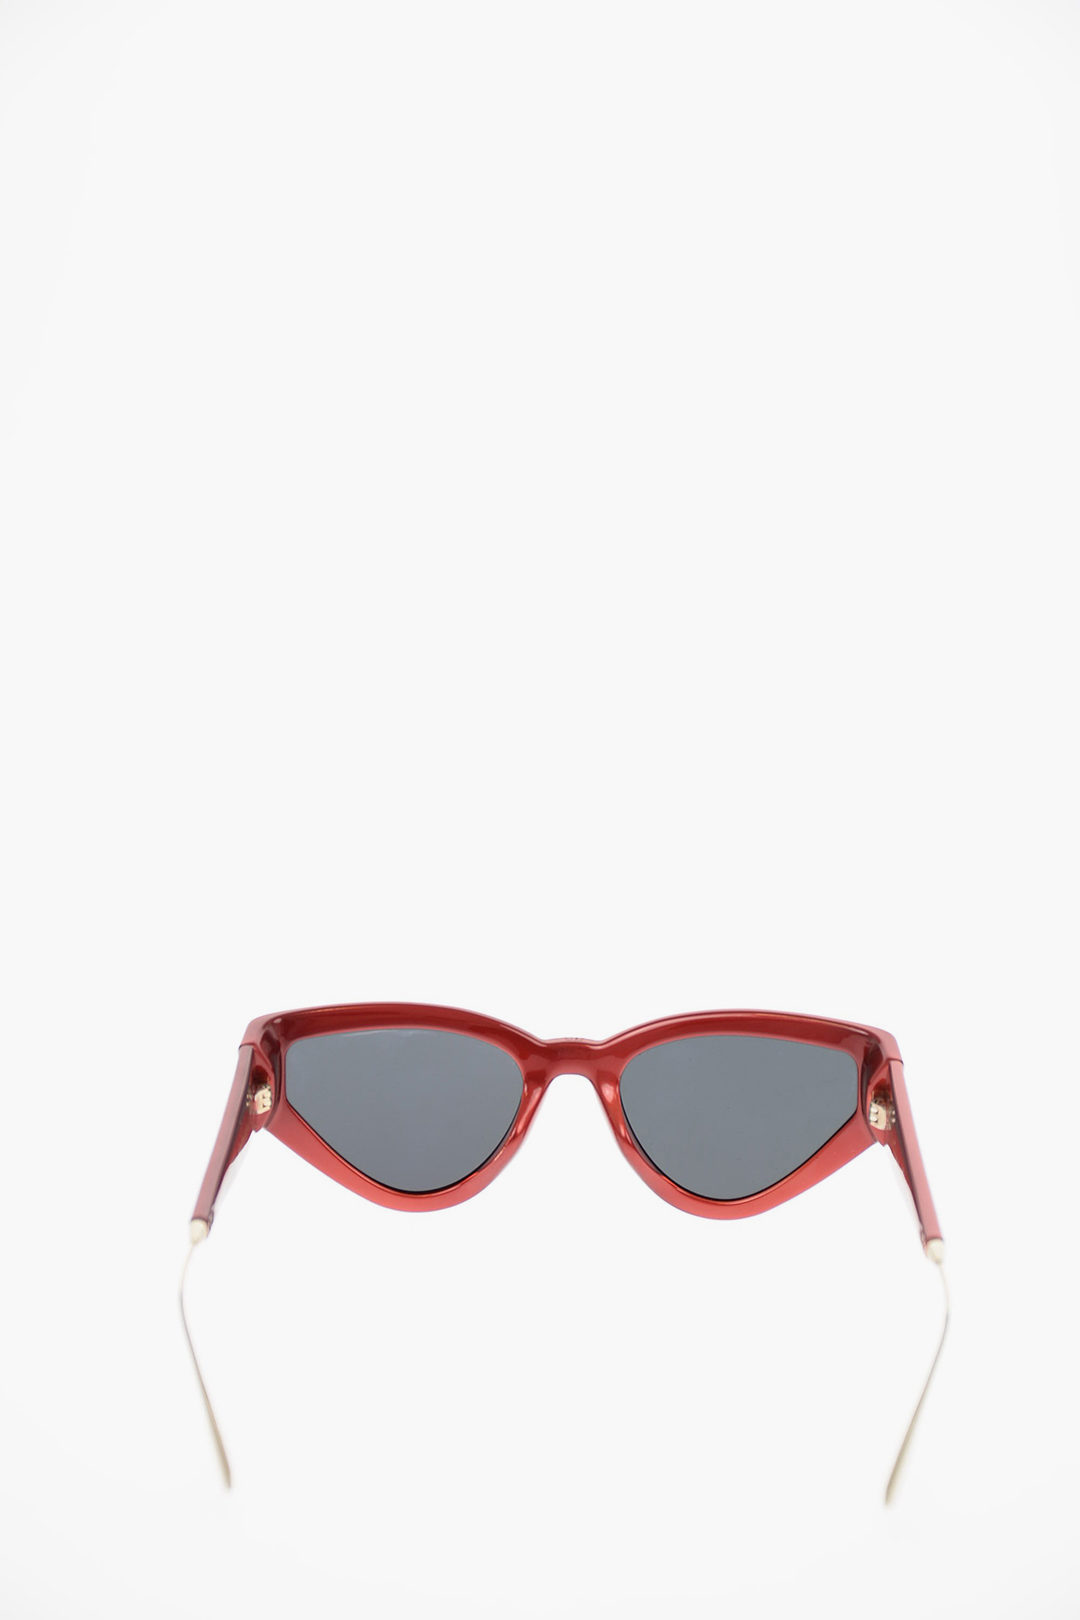 Sunglasses Dior CATSTYLEDIOR1  Mia Burton